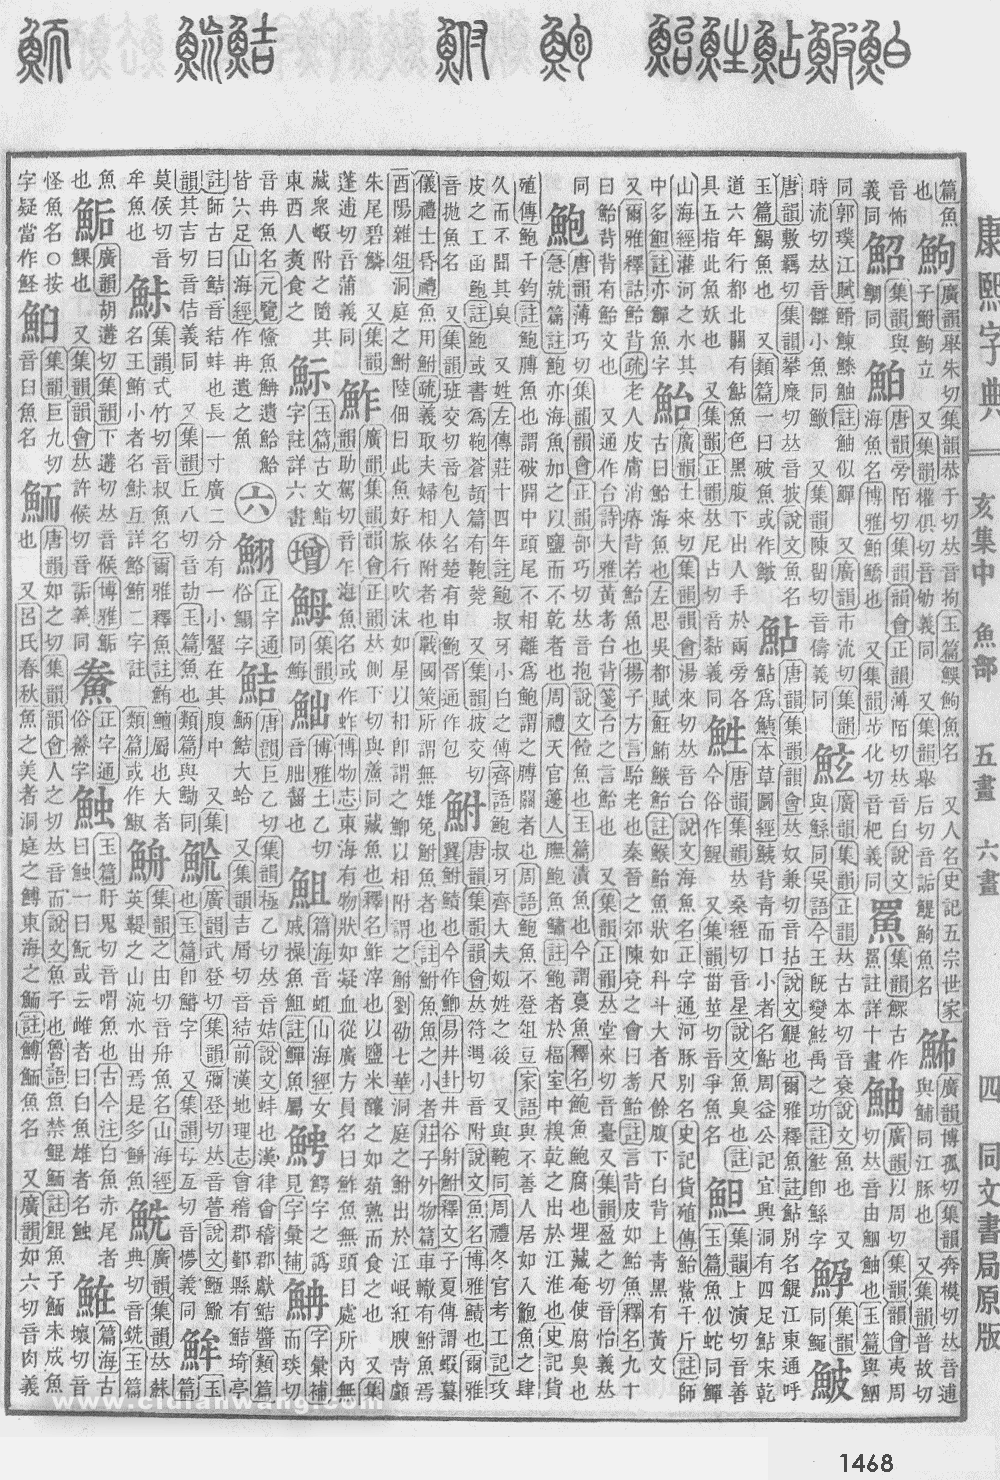 康熙字典掃描版第1468頁